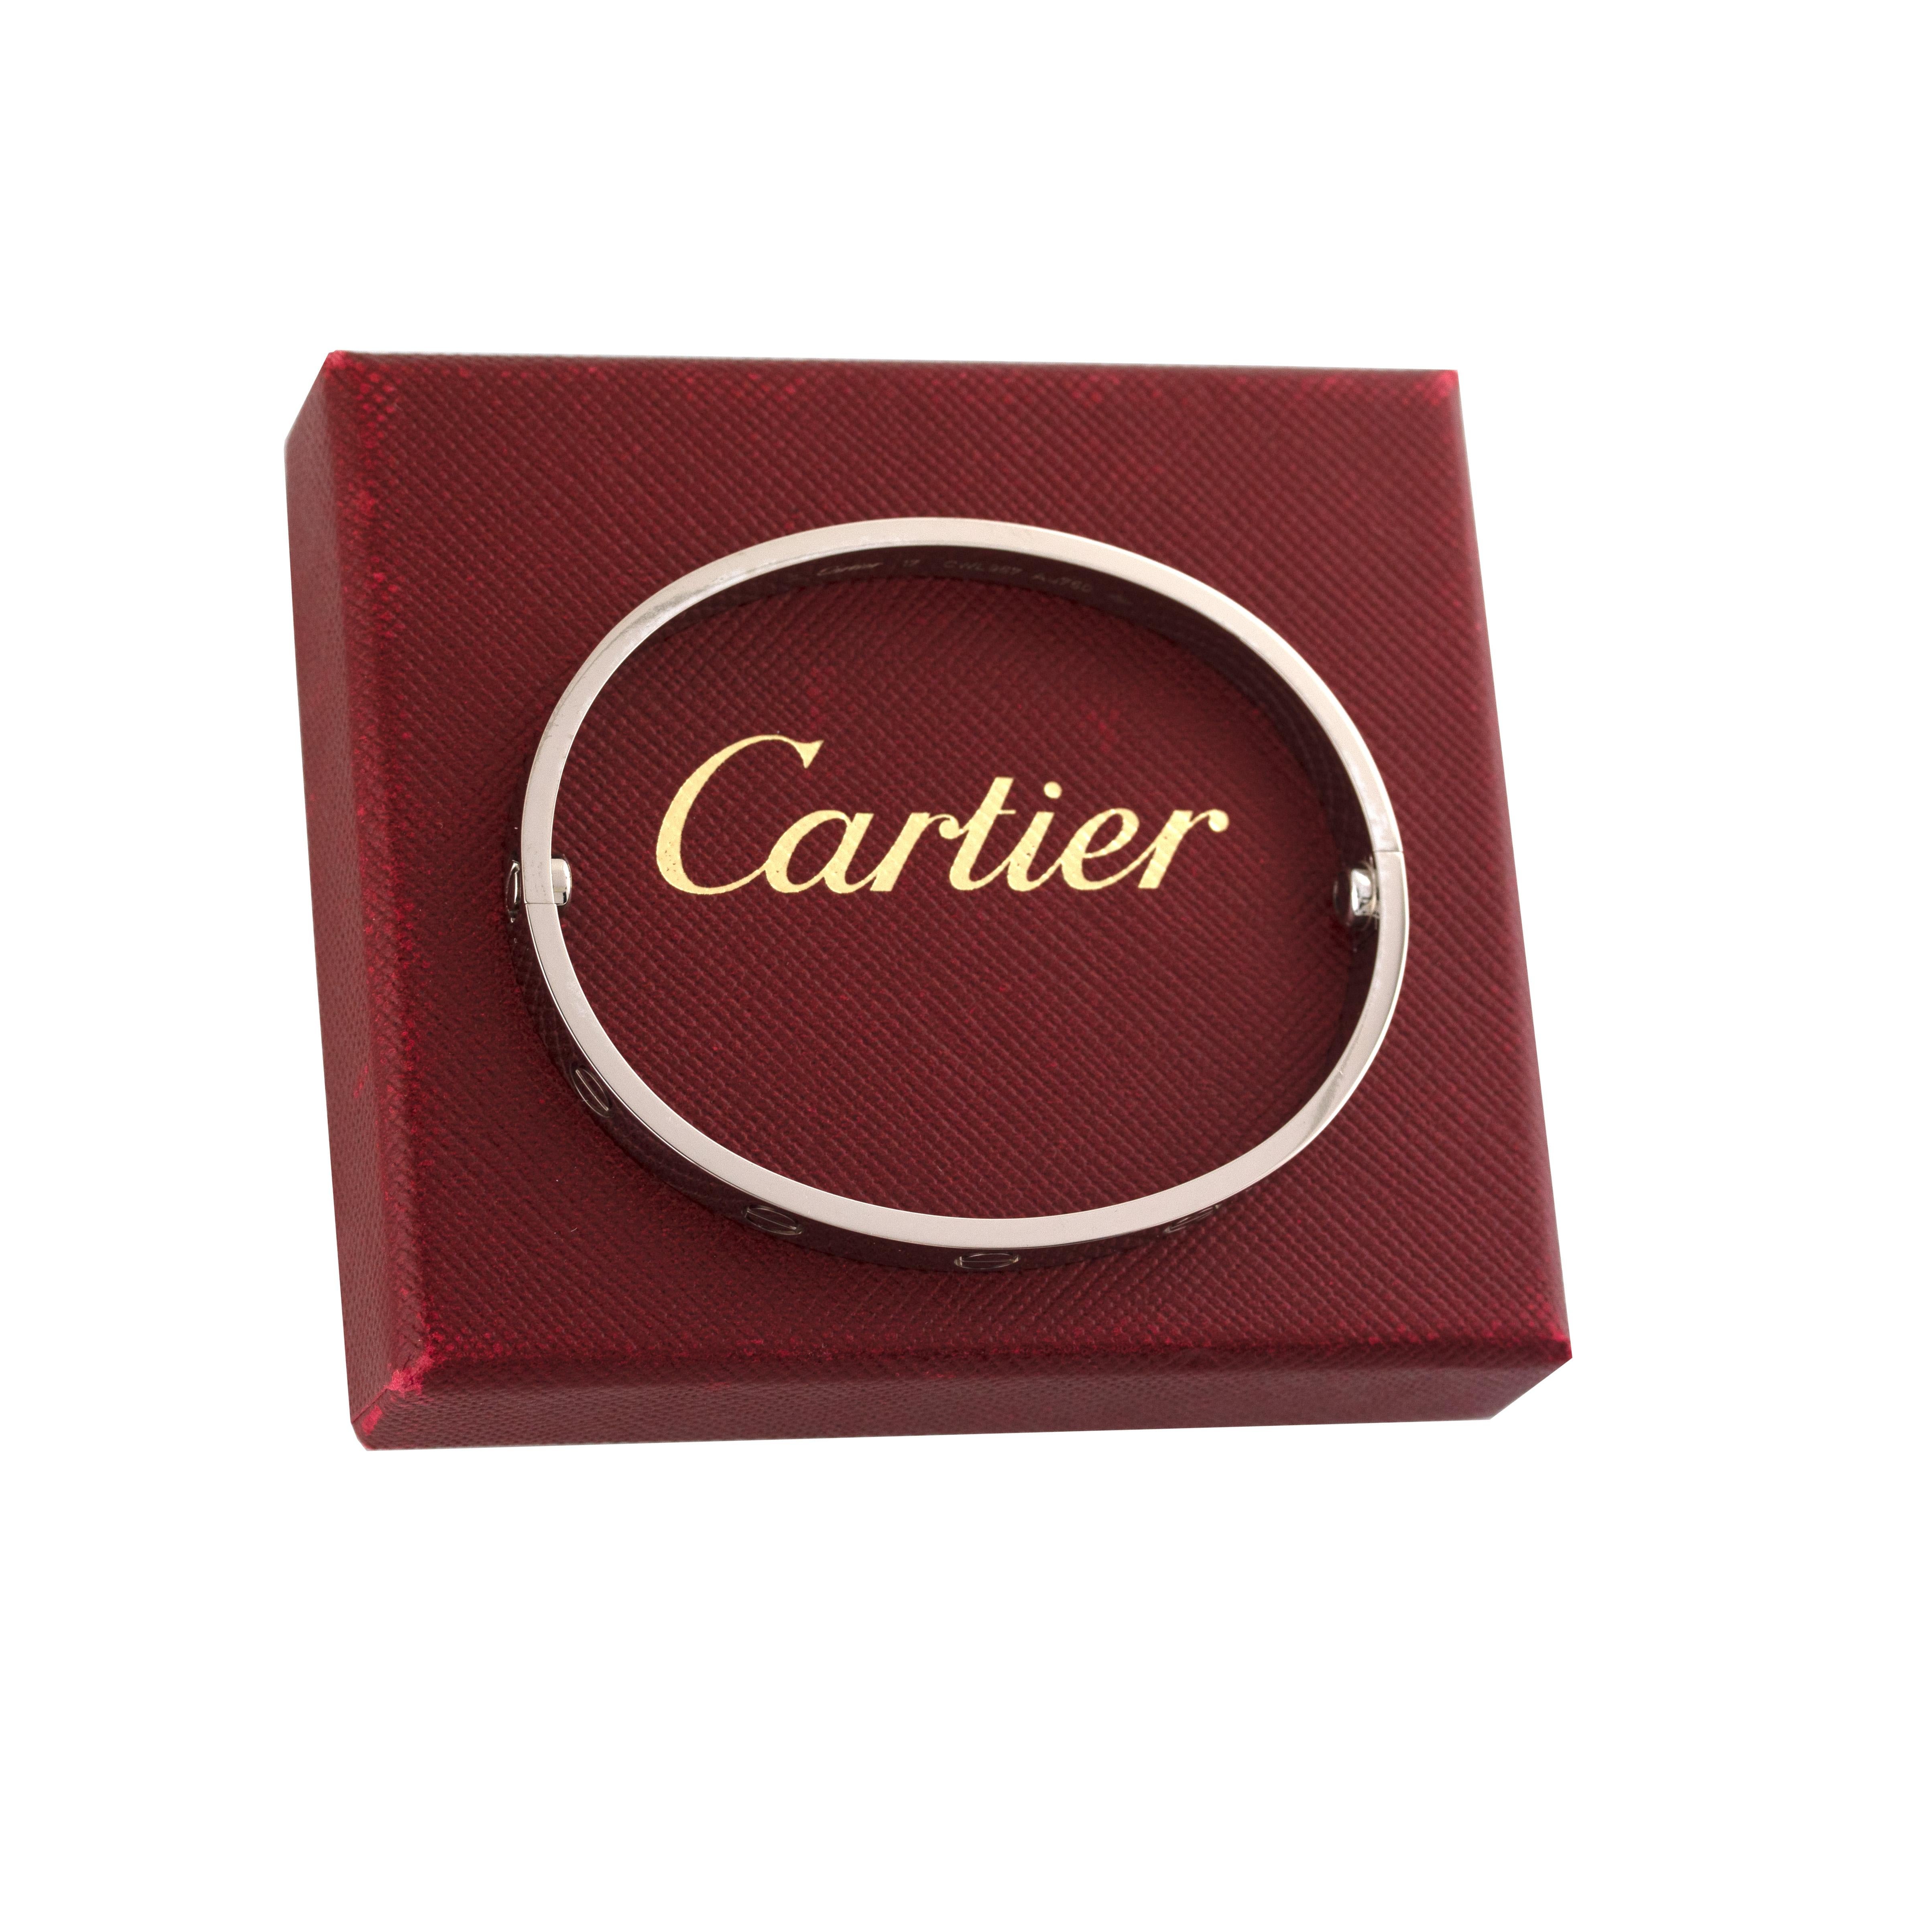 Women's or Men's Cartier 18 Karat White Gold Love Bangle New Style Bracelet